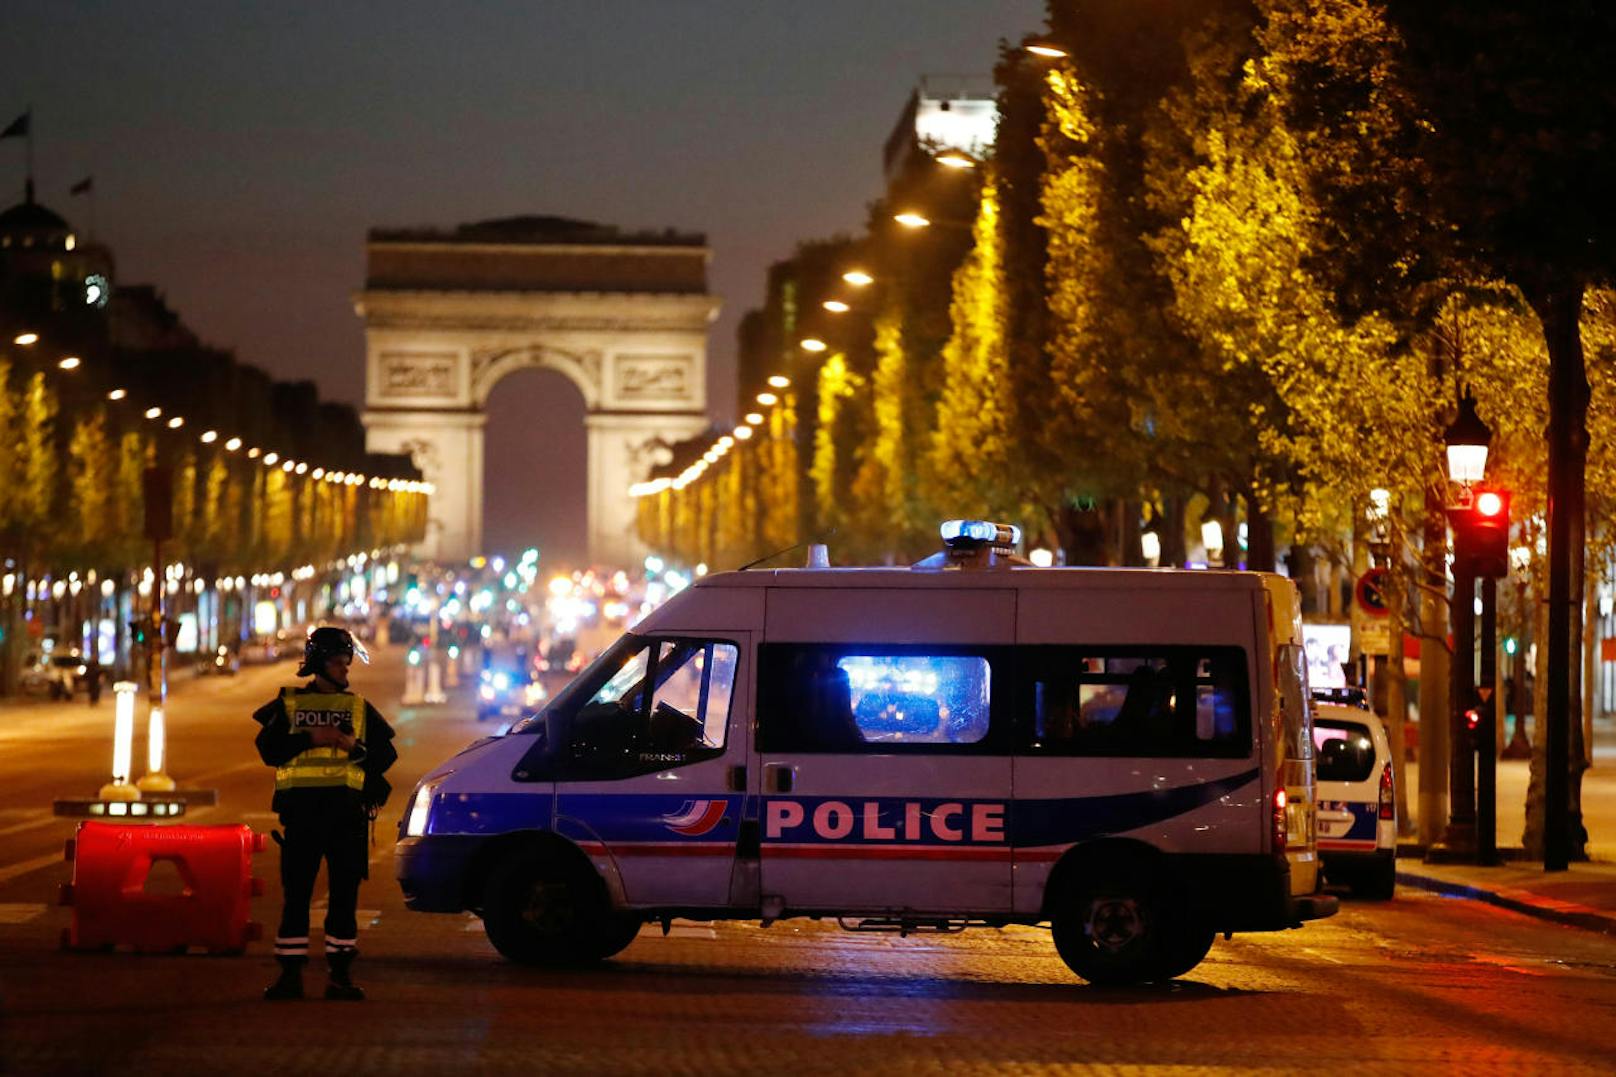 Der Angreifer sei "niedergeschossen" worden, teilte das Innenministerium in der französischen Hauptstadt mit. Aus Justizkreisen hieß es, der Schütze sei tot.